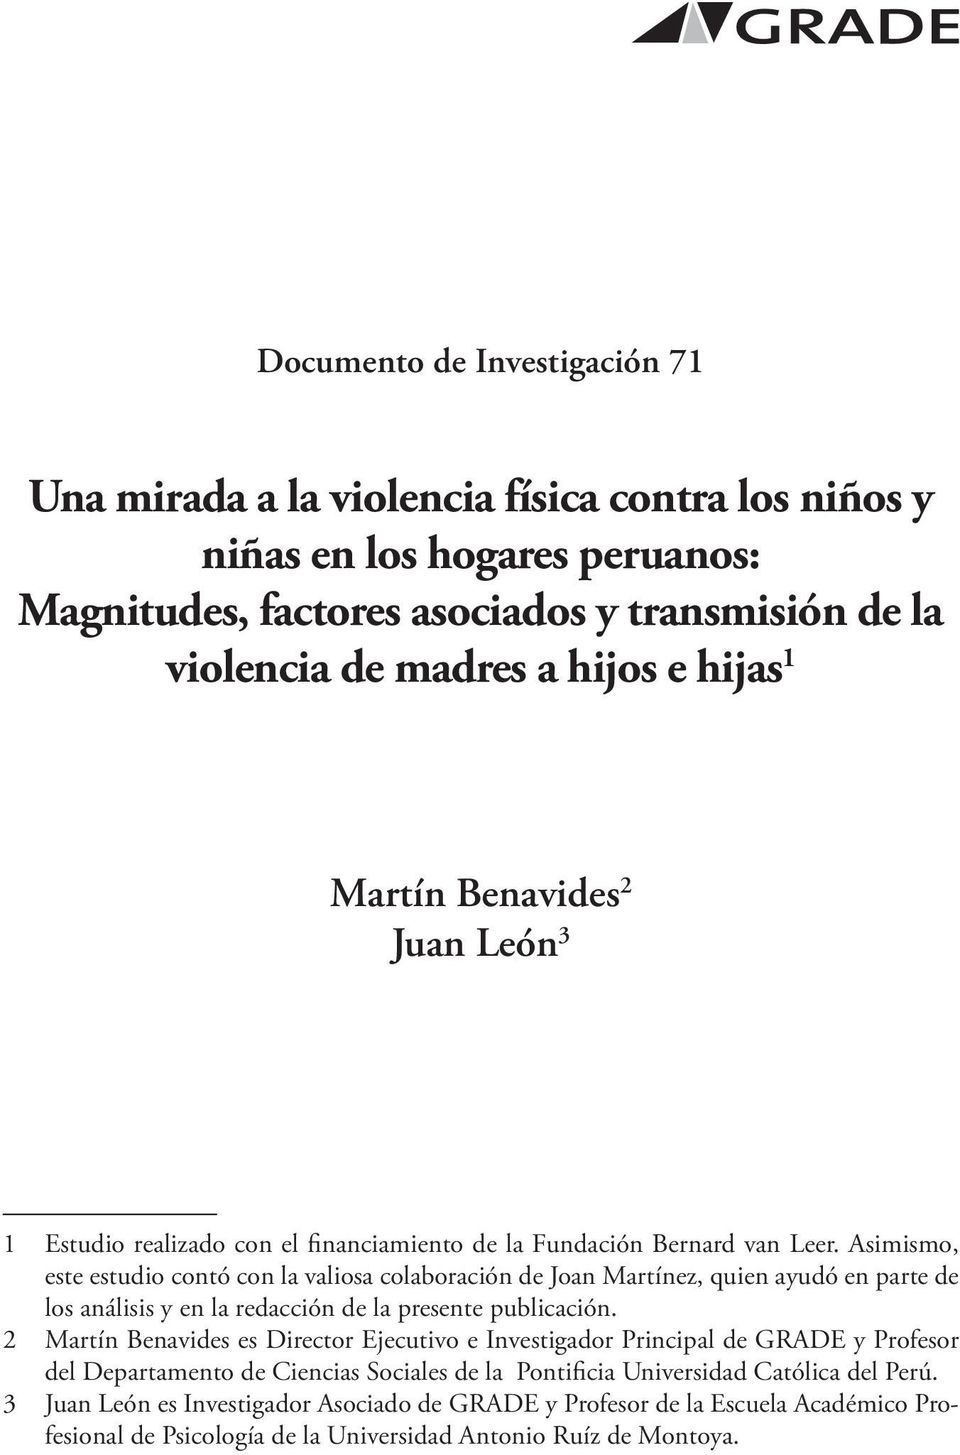 Asimismo, este estudio contó con la valiosa colaboración de Joan Martínez, quien ayudó en parte de los análisis y en la redacción de la presente publicación.